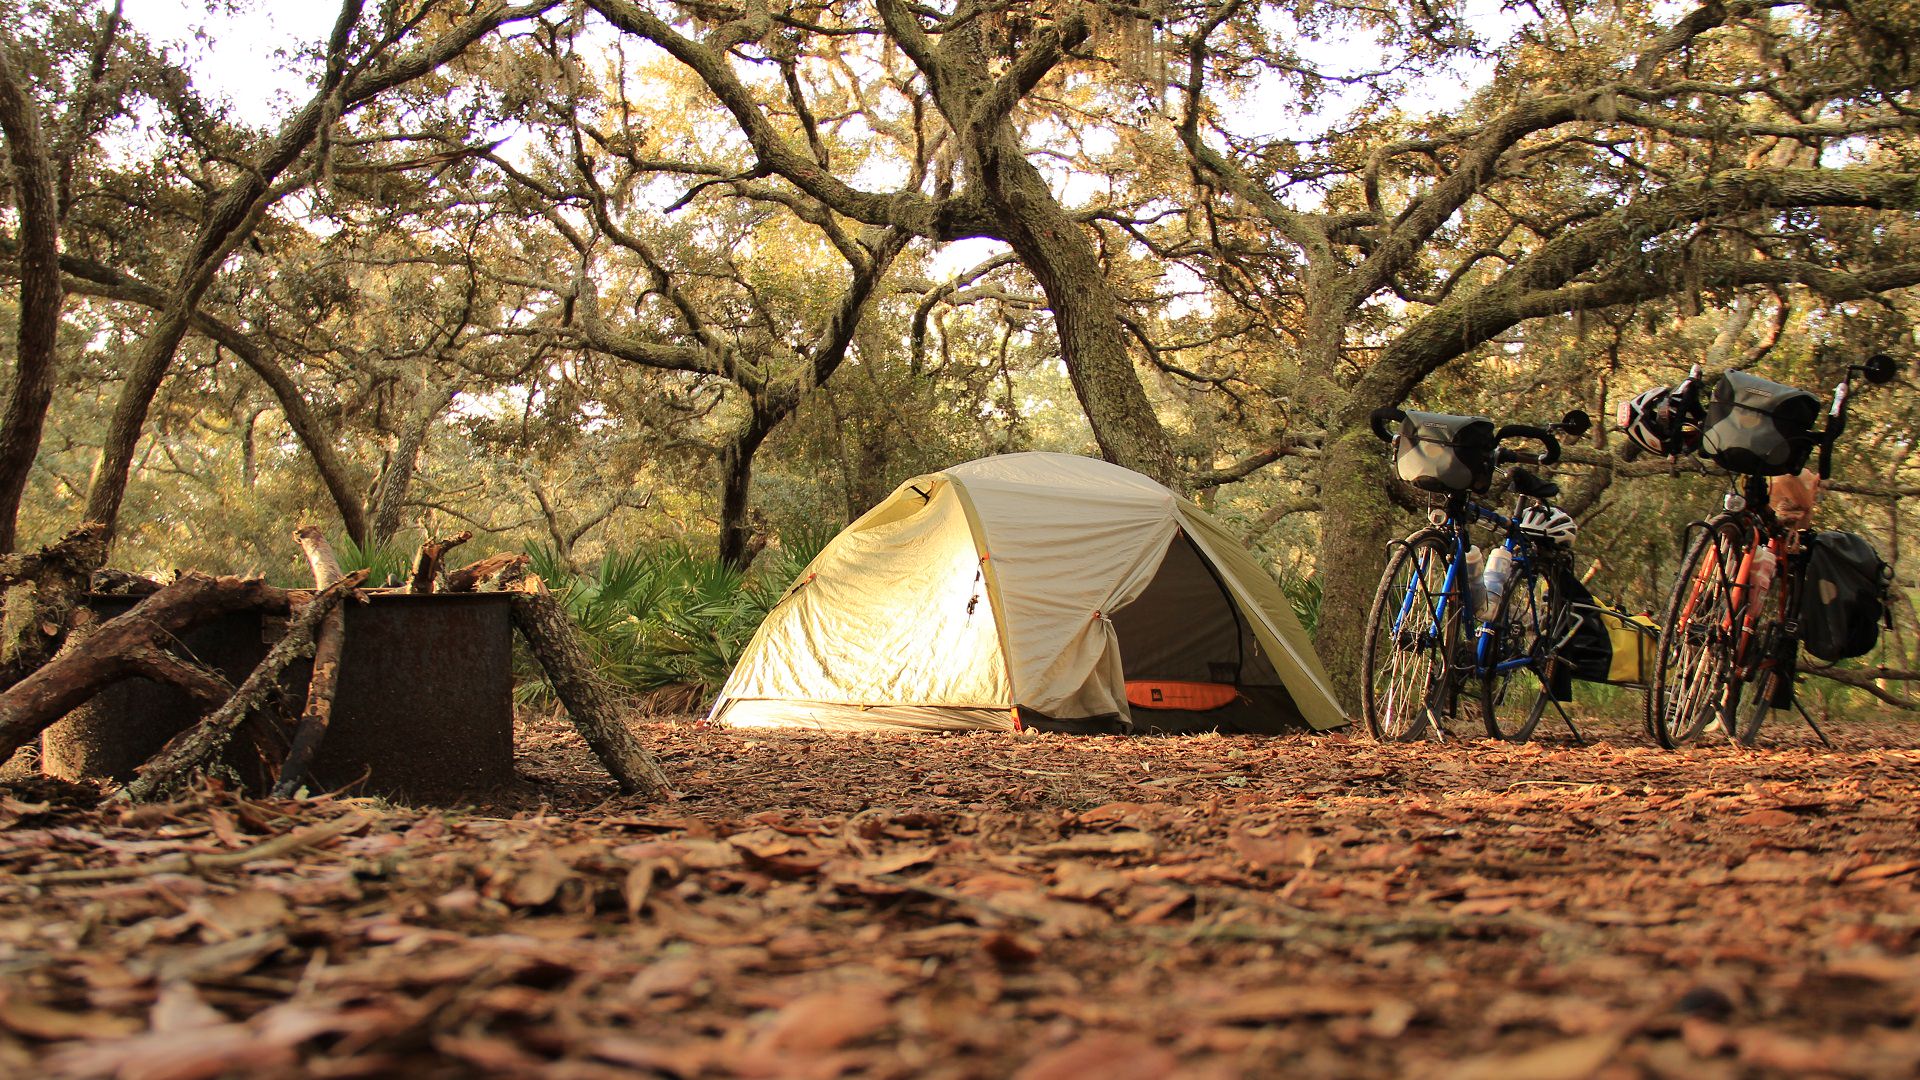 Camping outdoor. Поход с палатками. Палатка в горах. Палатка в лесу. Обустройство лагеря на природе с палатками.